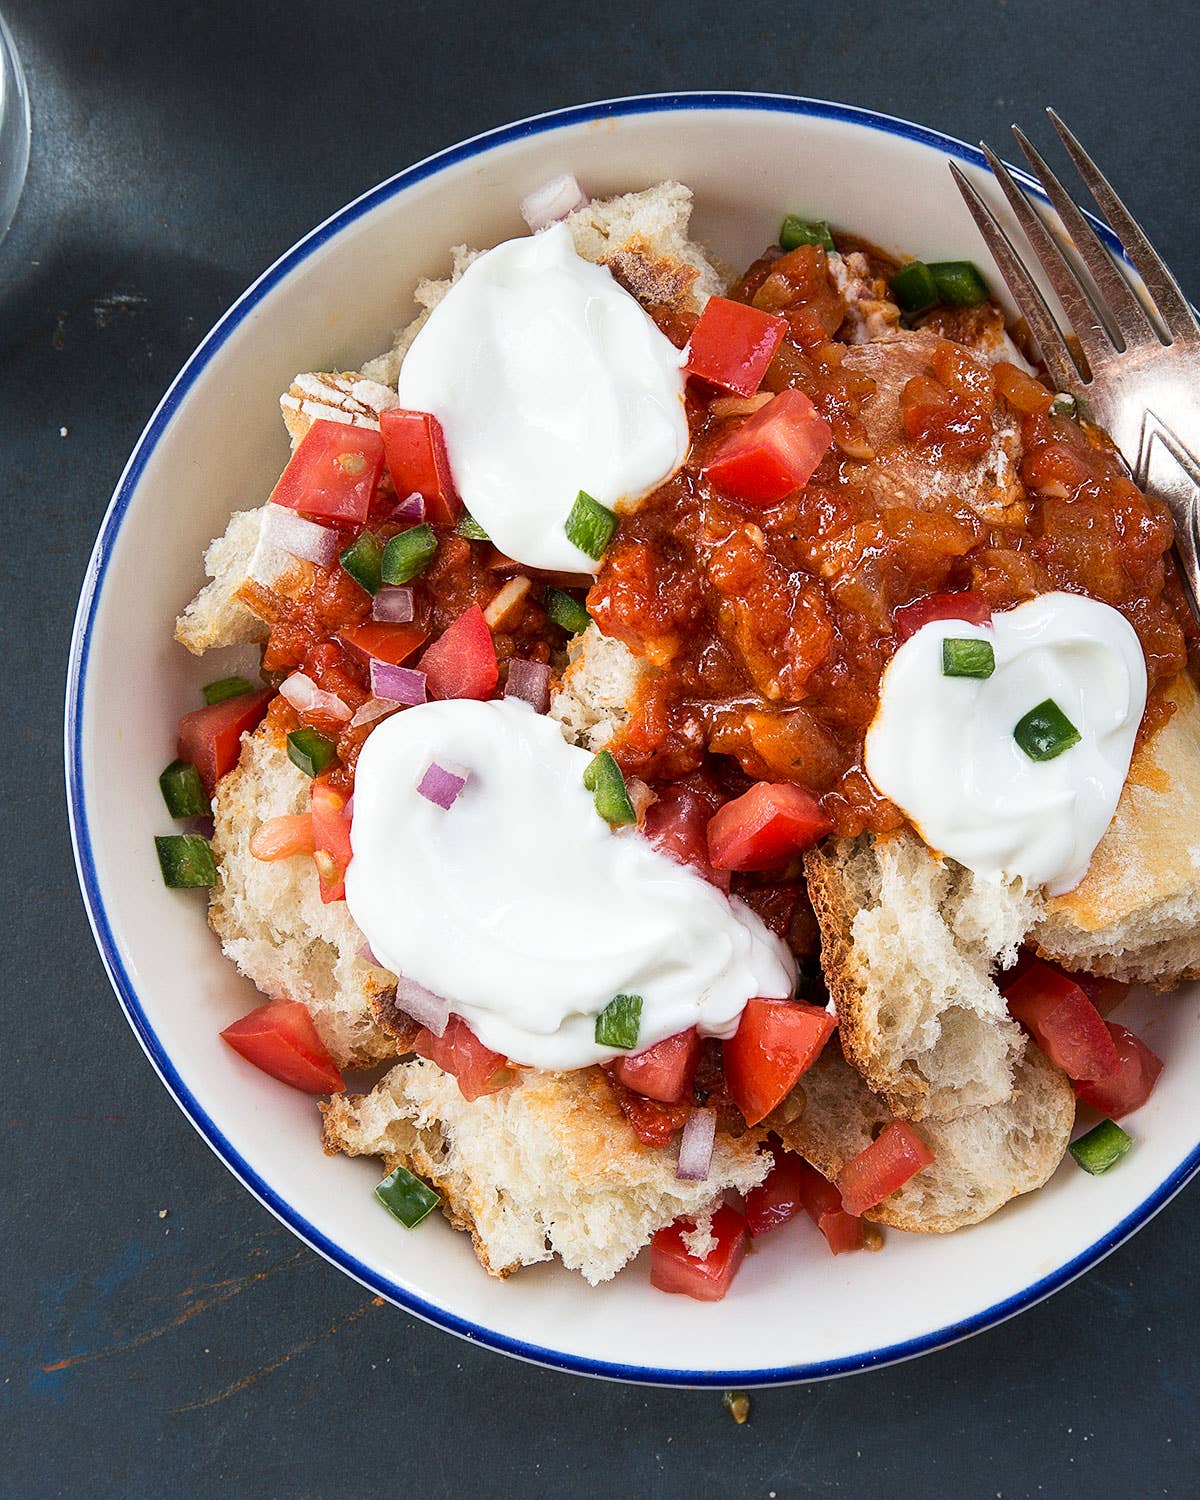 Eritrean Spicy Tomato Bread Salad with Yogurt (Fata)